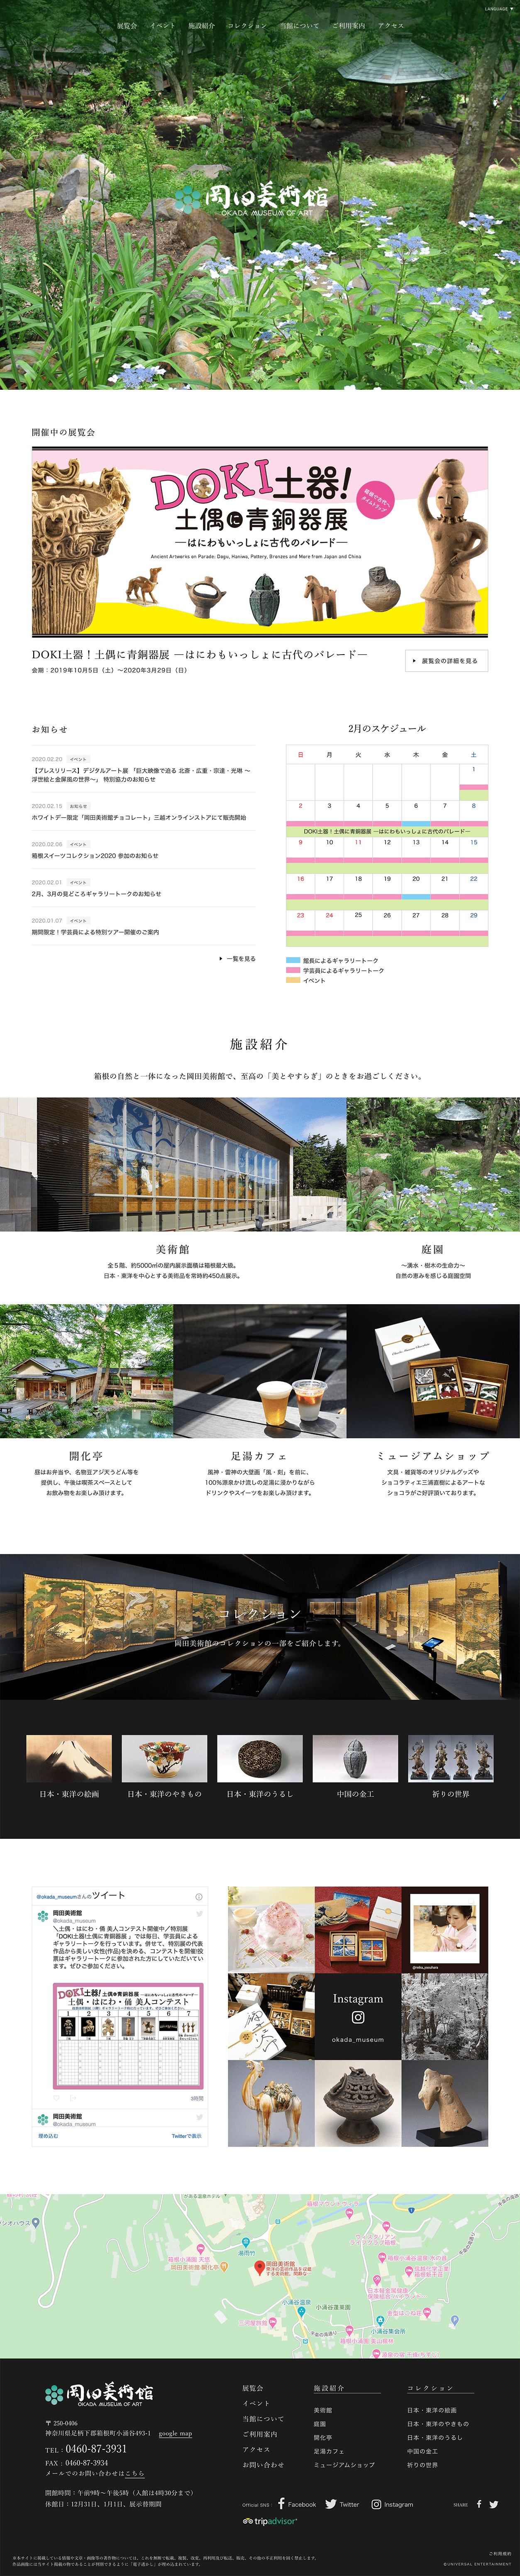 okada岡田美术馆网站设计